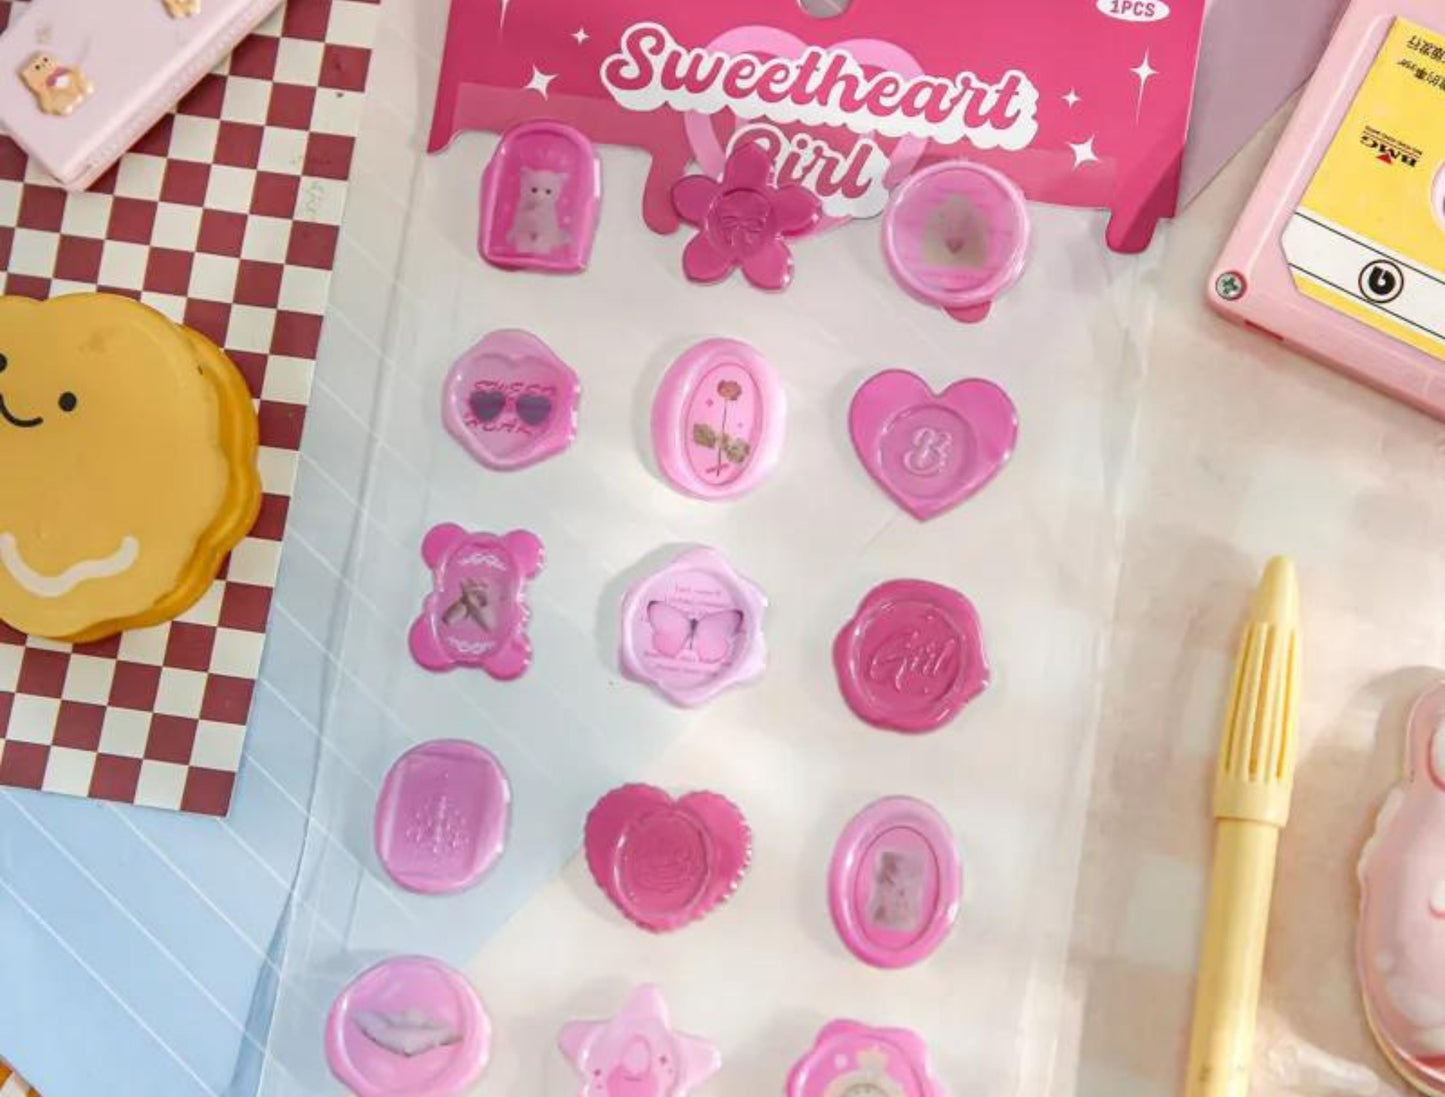 Sweetheart Girl - 15 Wax Seal Stickers, Wax Seals, Kawaii Wax Seal Stickers,Cute Kawaii Stickers